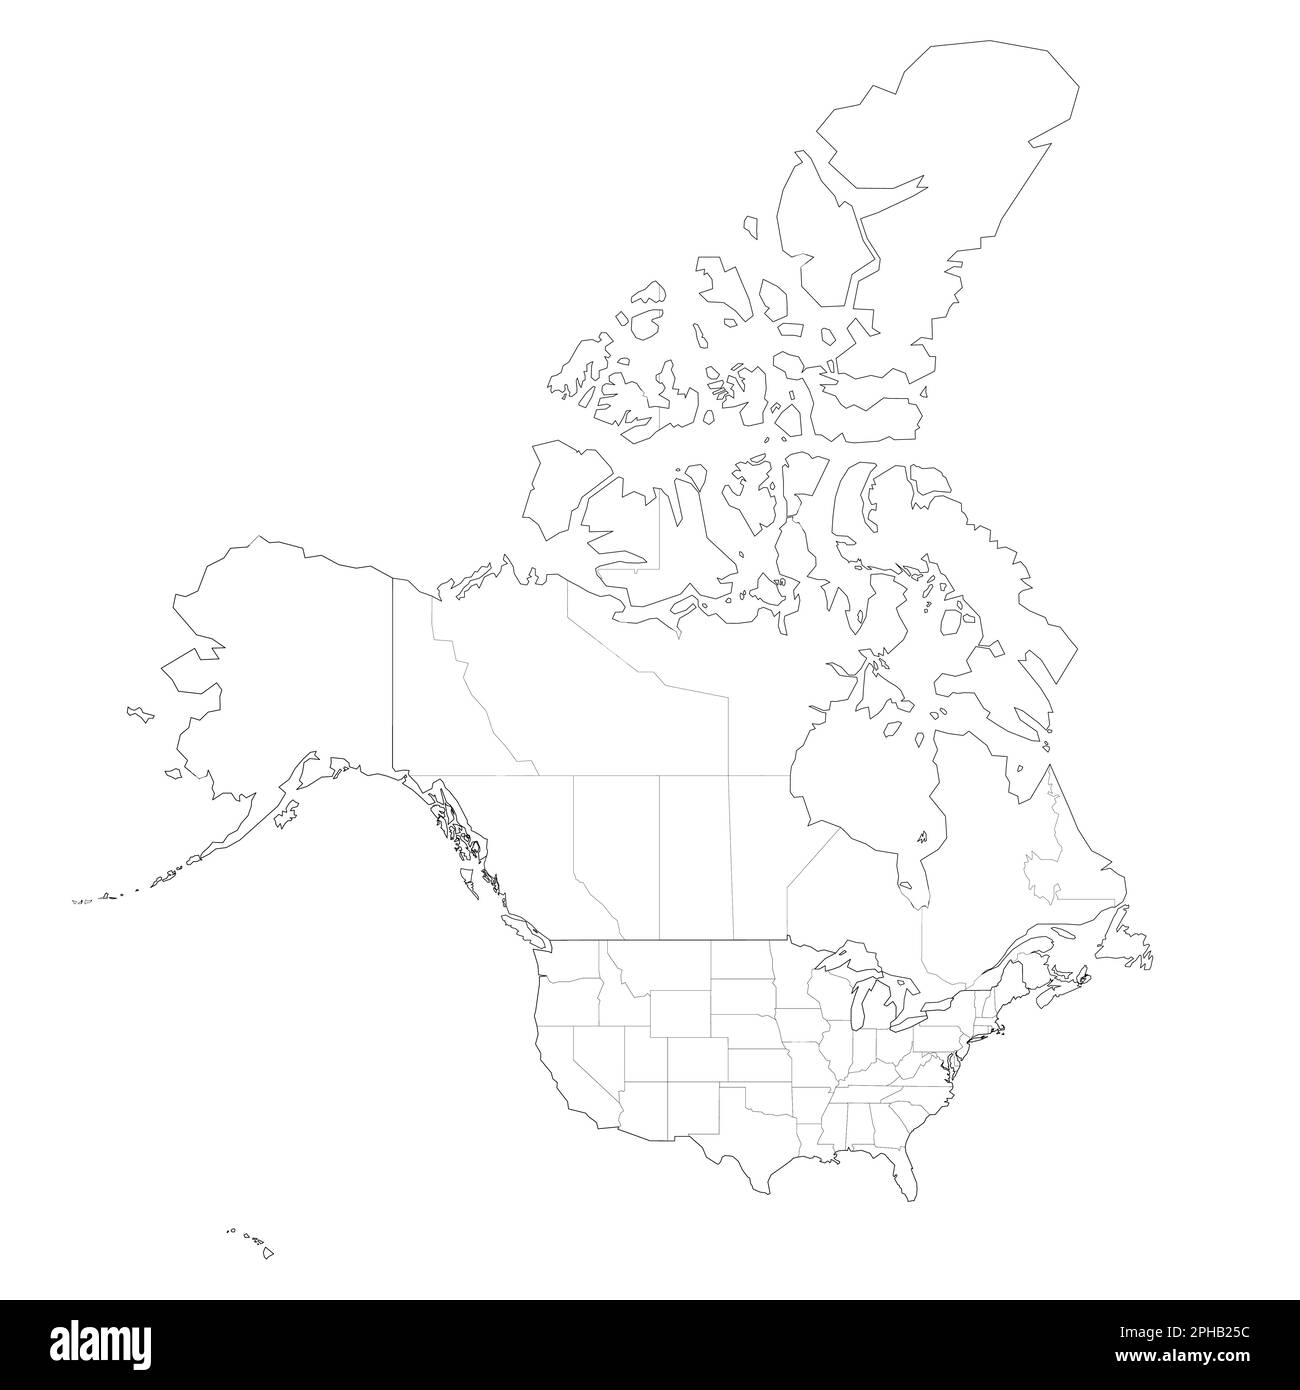 Mappa politica degli Stati Uniti e del Canada delle divisioni amministrative. Mappa vettoriale con contorno nero vuota Illustrazione Vettoriale